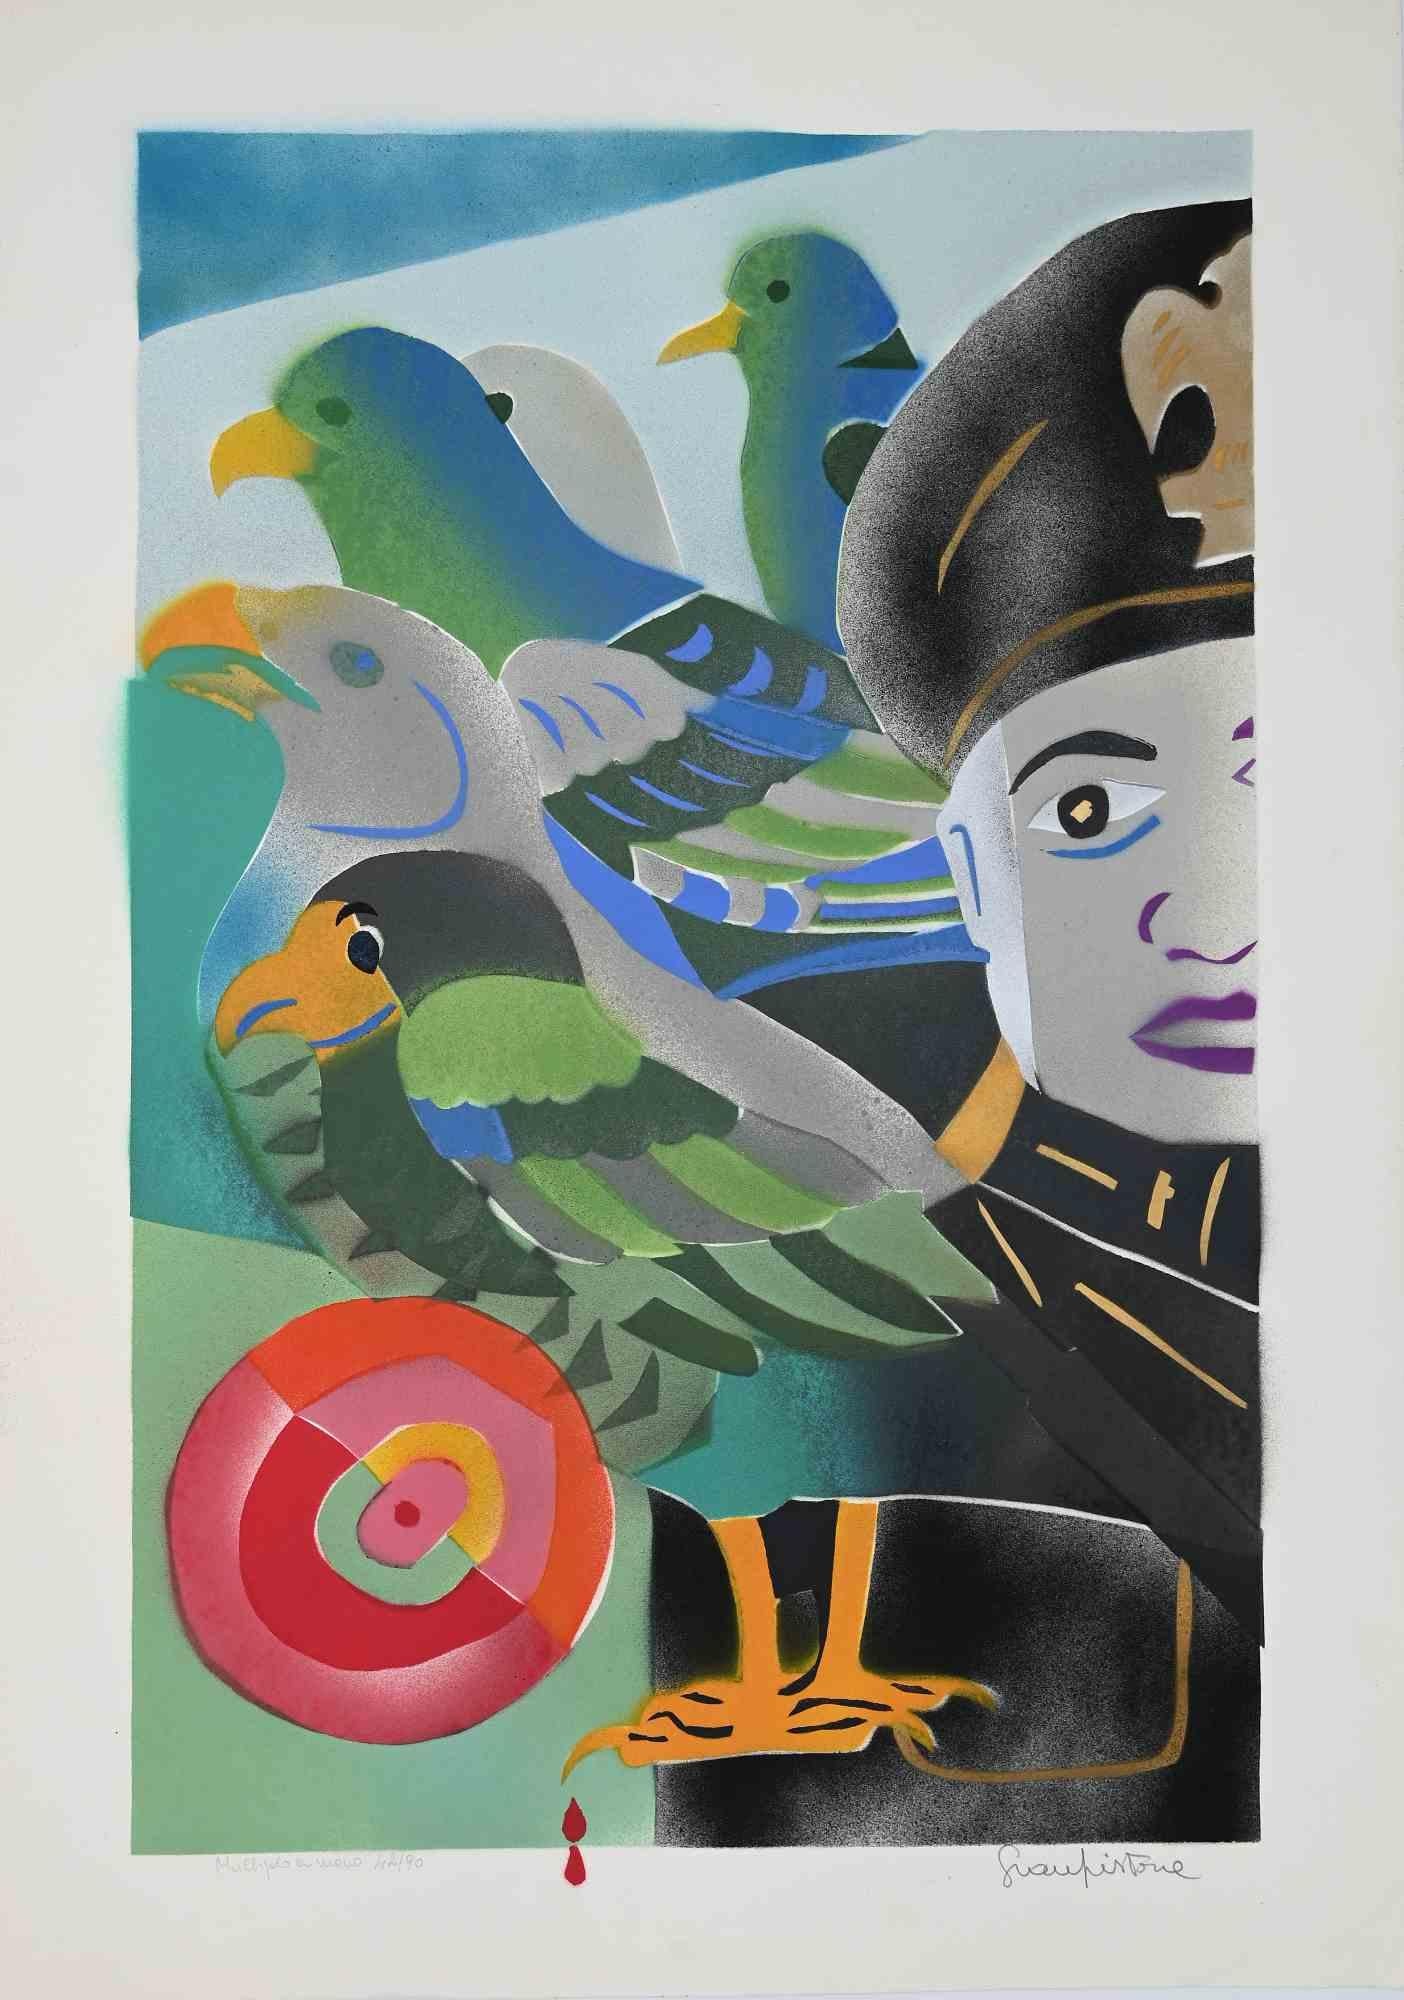 El General y los Pájaros es una bella serigrafía en color retocada a mano realizada por Gianpistone en la década de 1970.

Firmado a mano con lápiz en el margen inferior derecho. Numerada en la parte inferior izquierda. Edición de 42/90.

En la